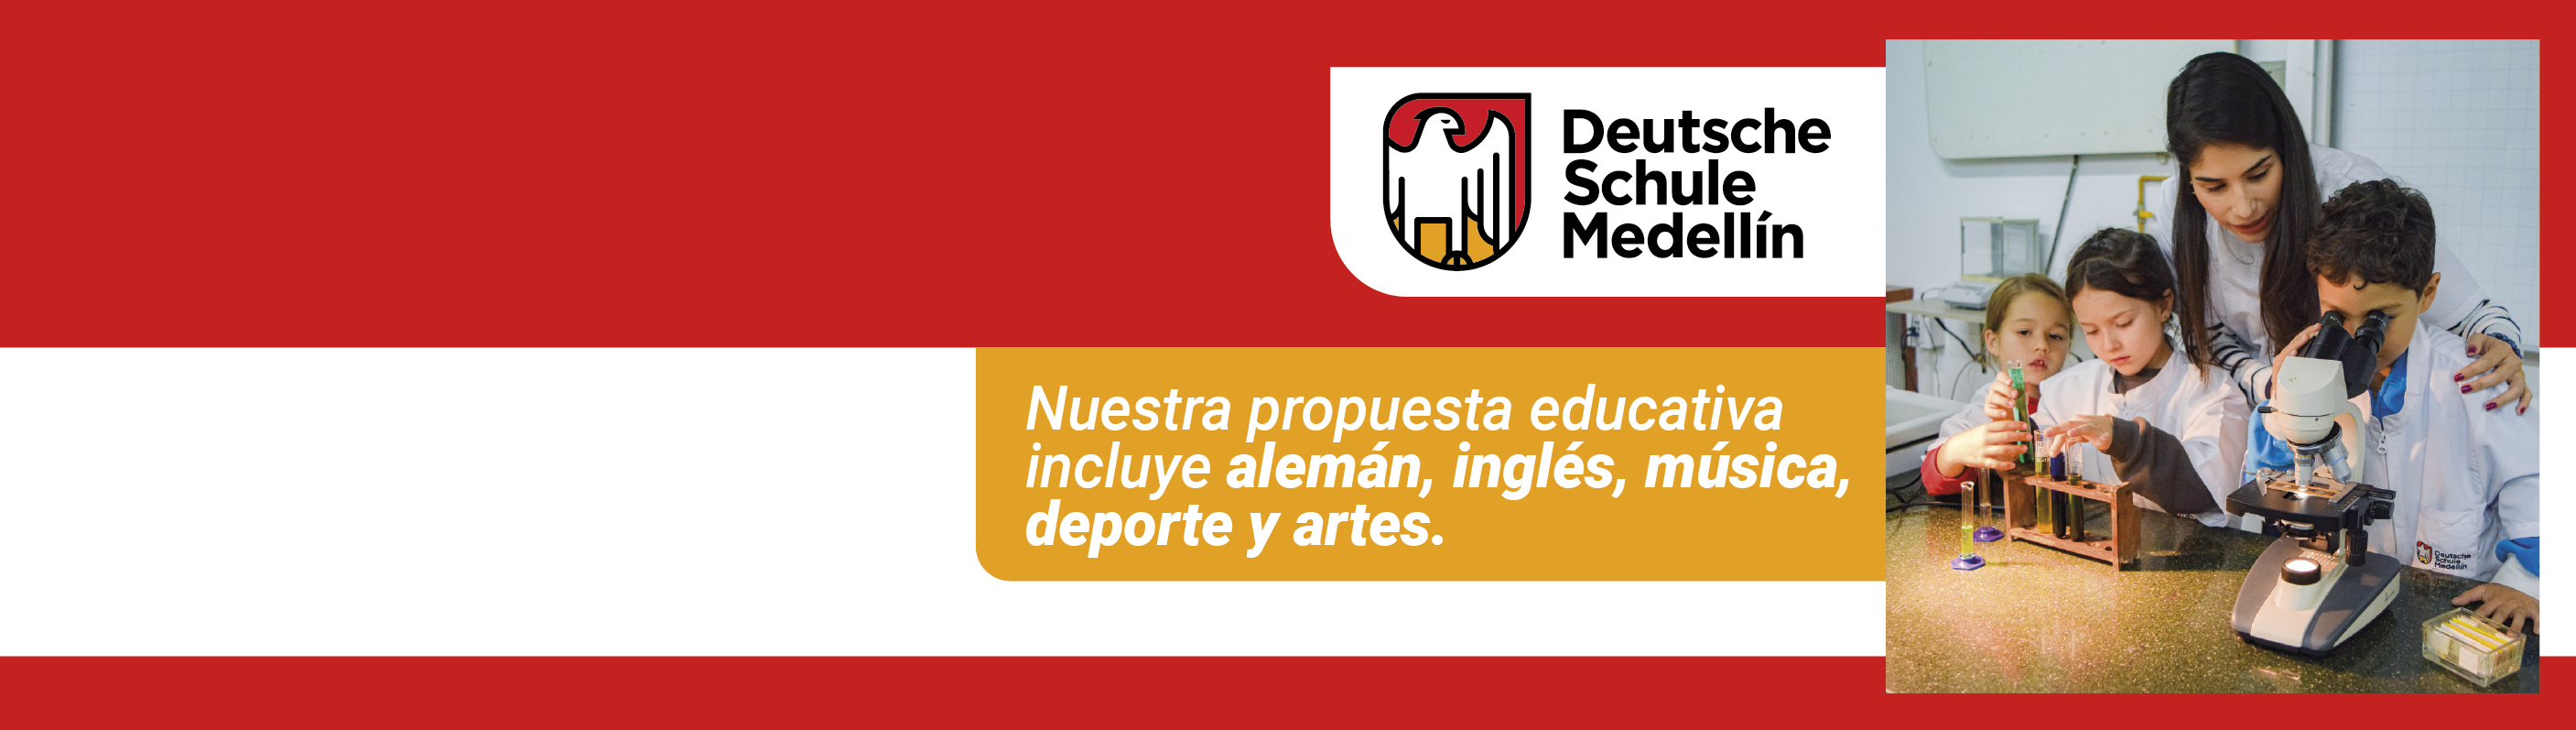 Discover the Deutsche Schule Medellín!